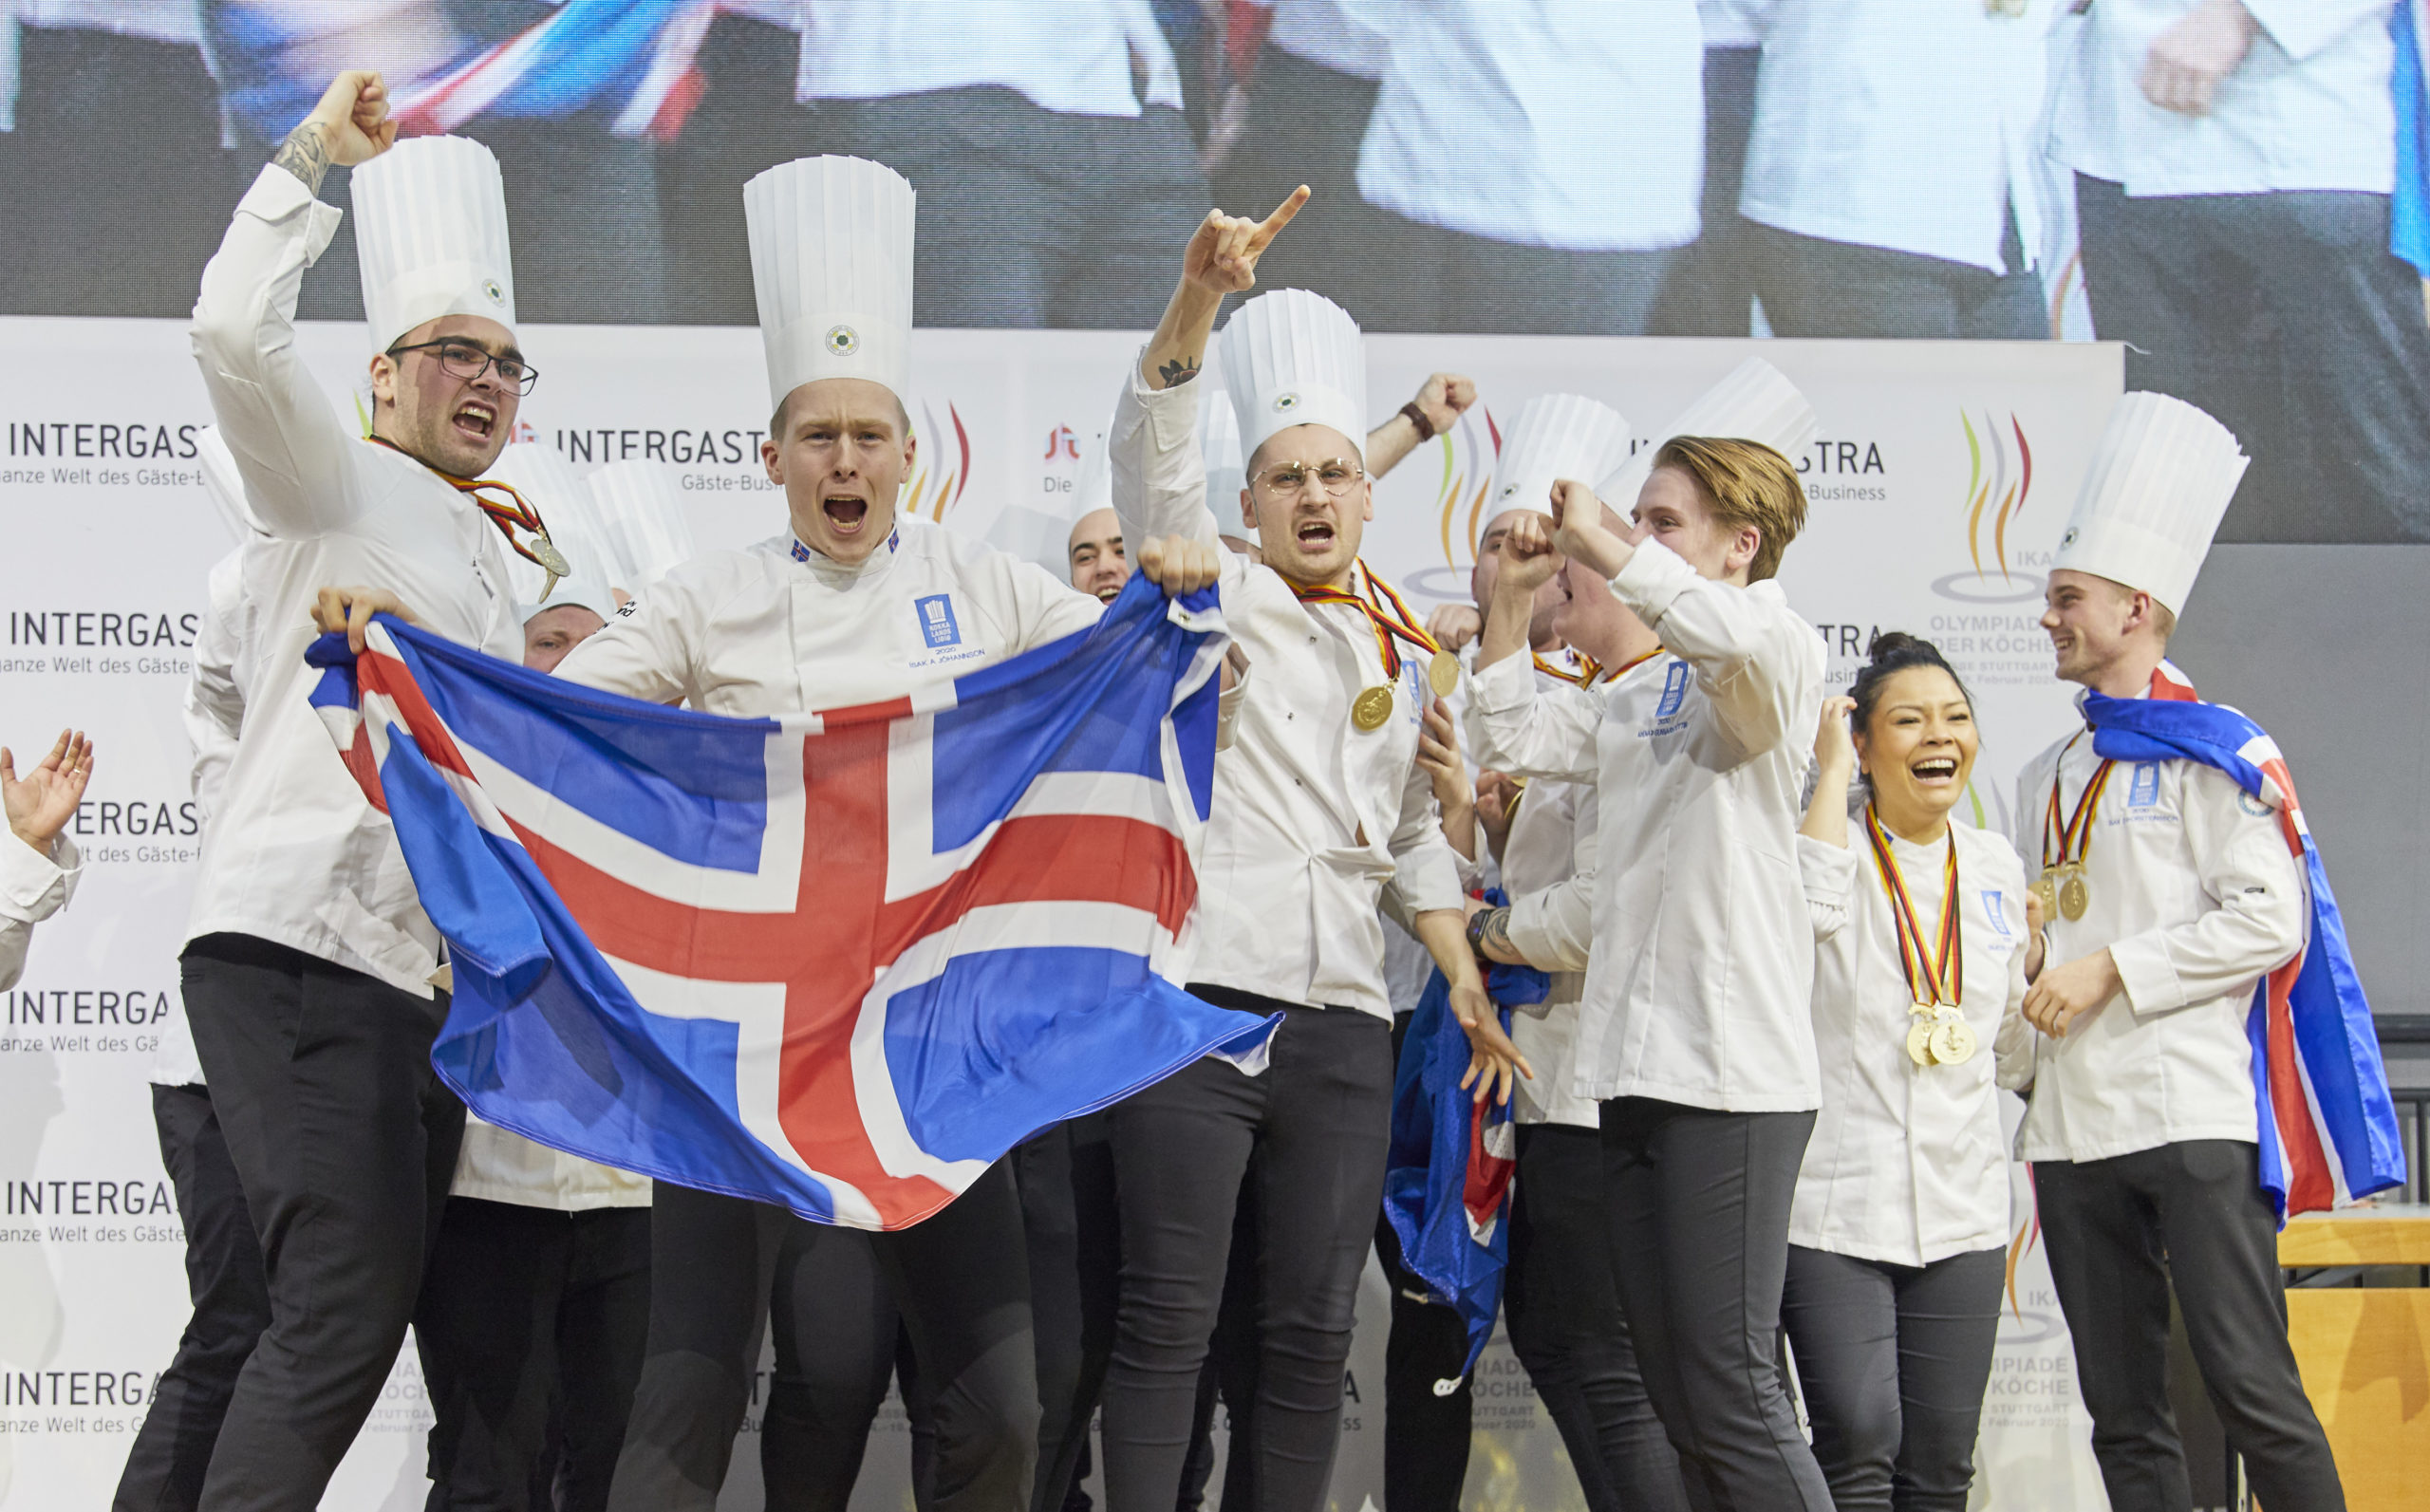 Gemeinsam gewinnen: Das drittplatzierte National Team Island bei der IKA 2020.